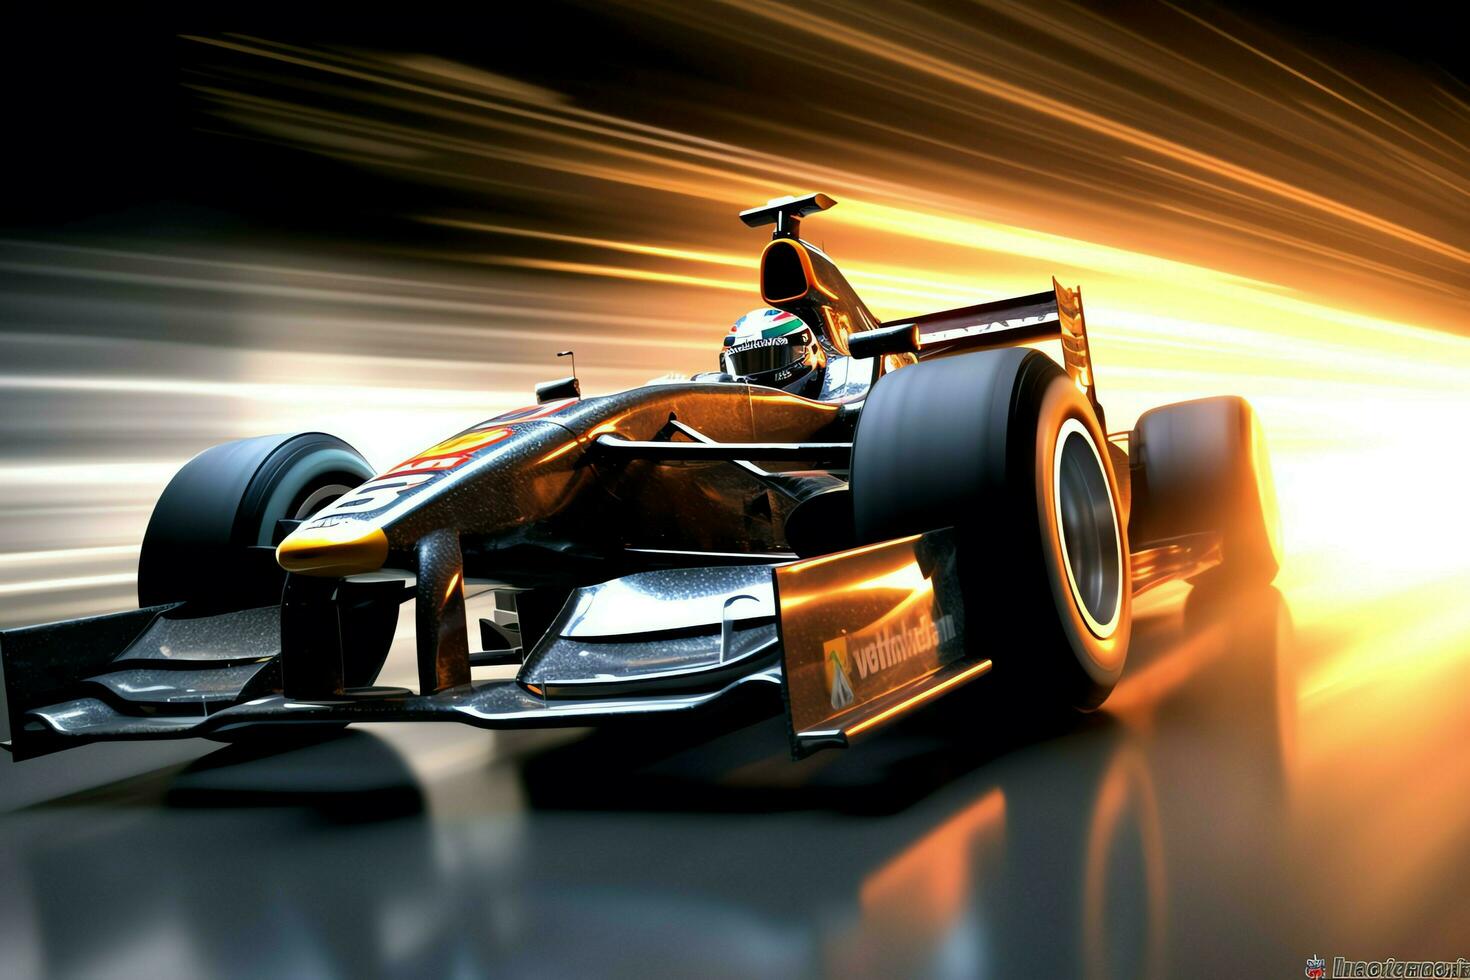 snel racing auto en piloot in formule een kampioen wedstrijden met snelheid en vlam. autosport auto concept door ai gegenereerd foto